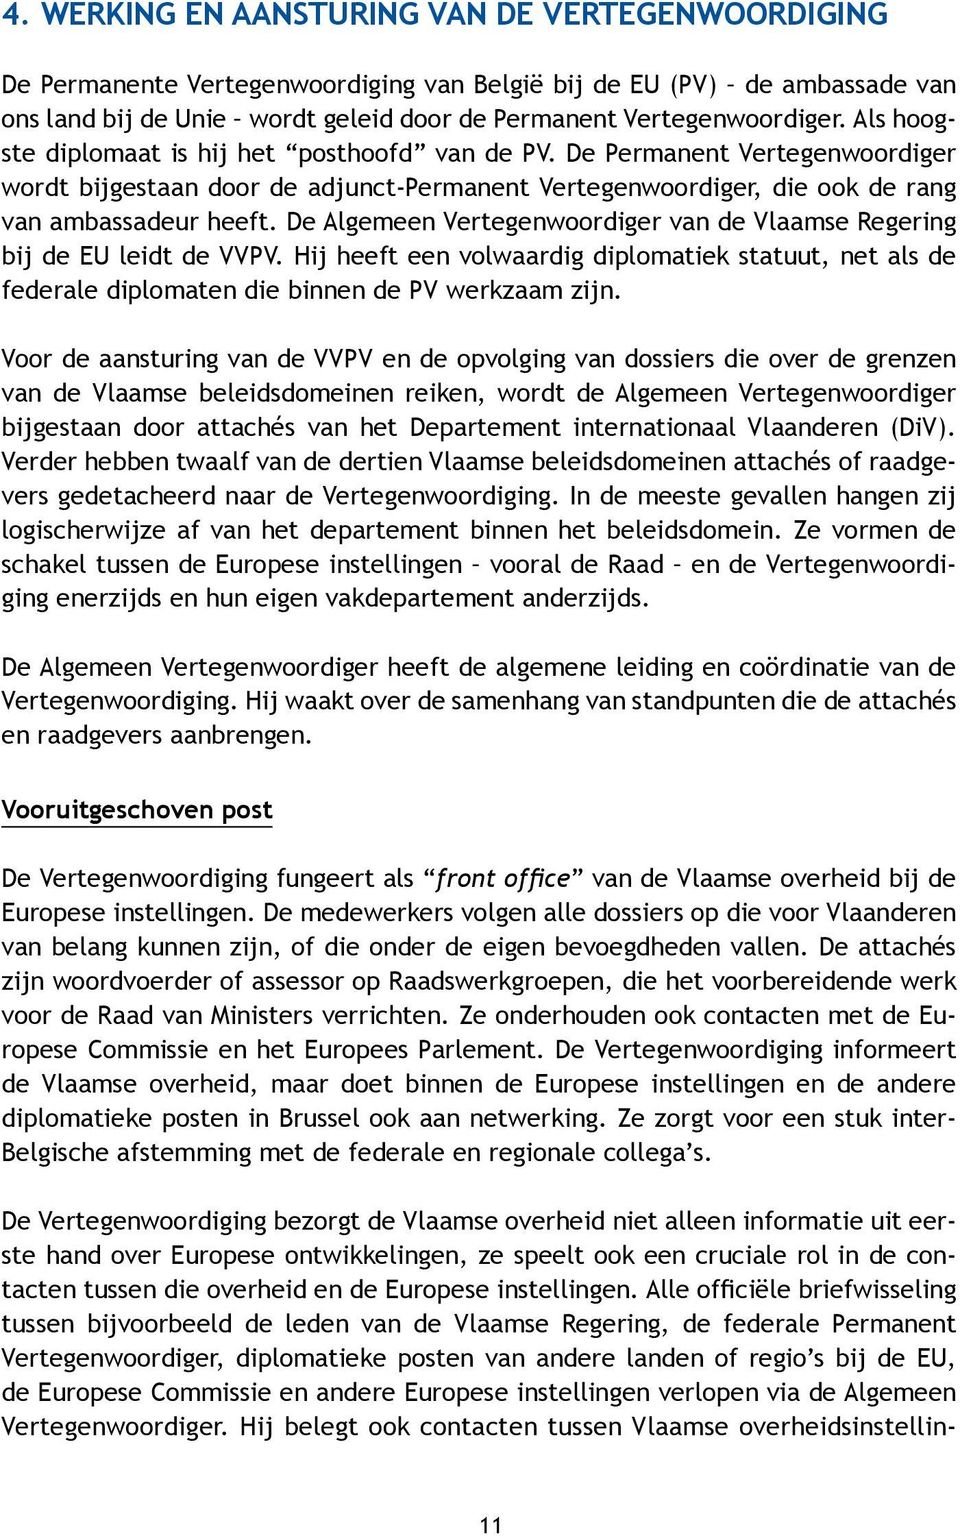 De Algemeen Vertegenwoordiger van de Vlaamse Regering bij de EU leidt de VVPV. Hij heeft een volwaardig diplomatiek statuut, net als de federale diplomaten die binnen de PV werkzaam zijn.